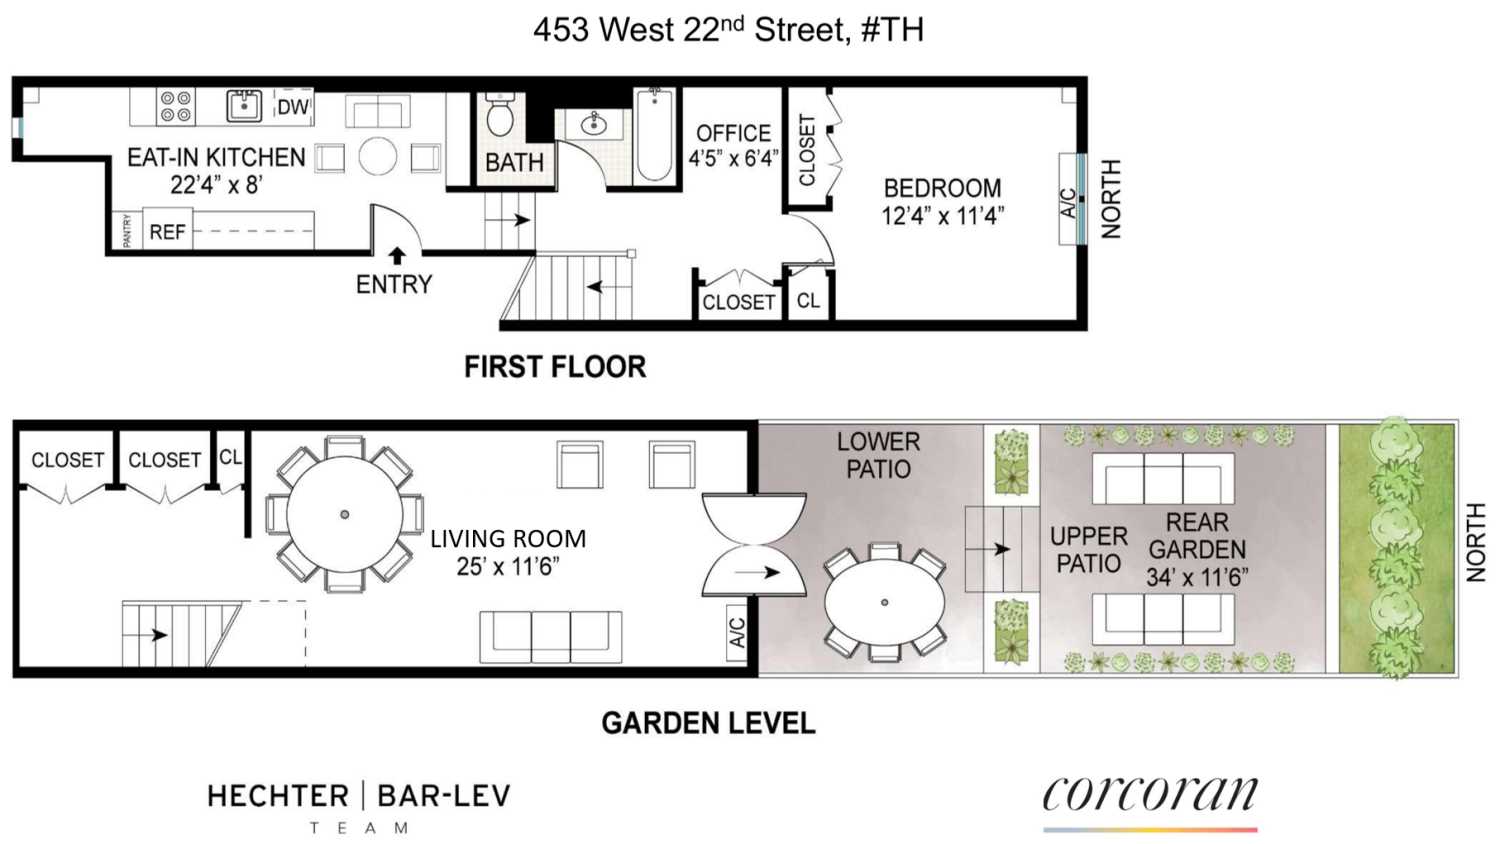 Floorplan for 453 West 22nd Street, GRDNDUPLEX